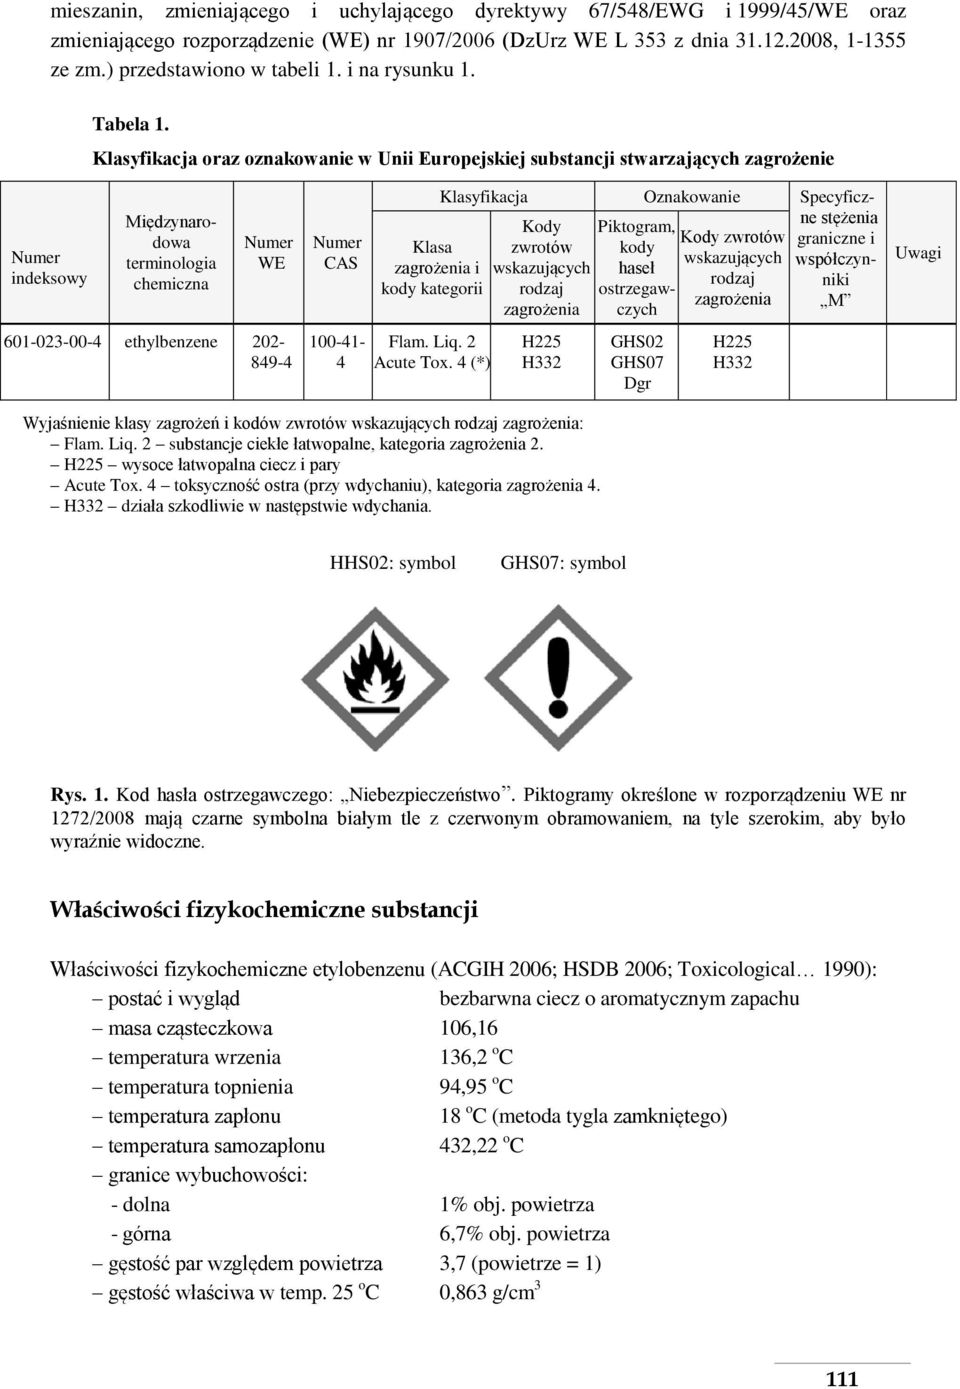 Klasyfikacja oraz oznakowanie w Unii Europejskiej substancji stwarzających zagrożenie Numer indeksowy Międzynarodowa terminologia chemiczna Numer WE 601-023-00-4 ethylbenzene 202-849-4 Numer CAS